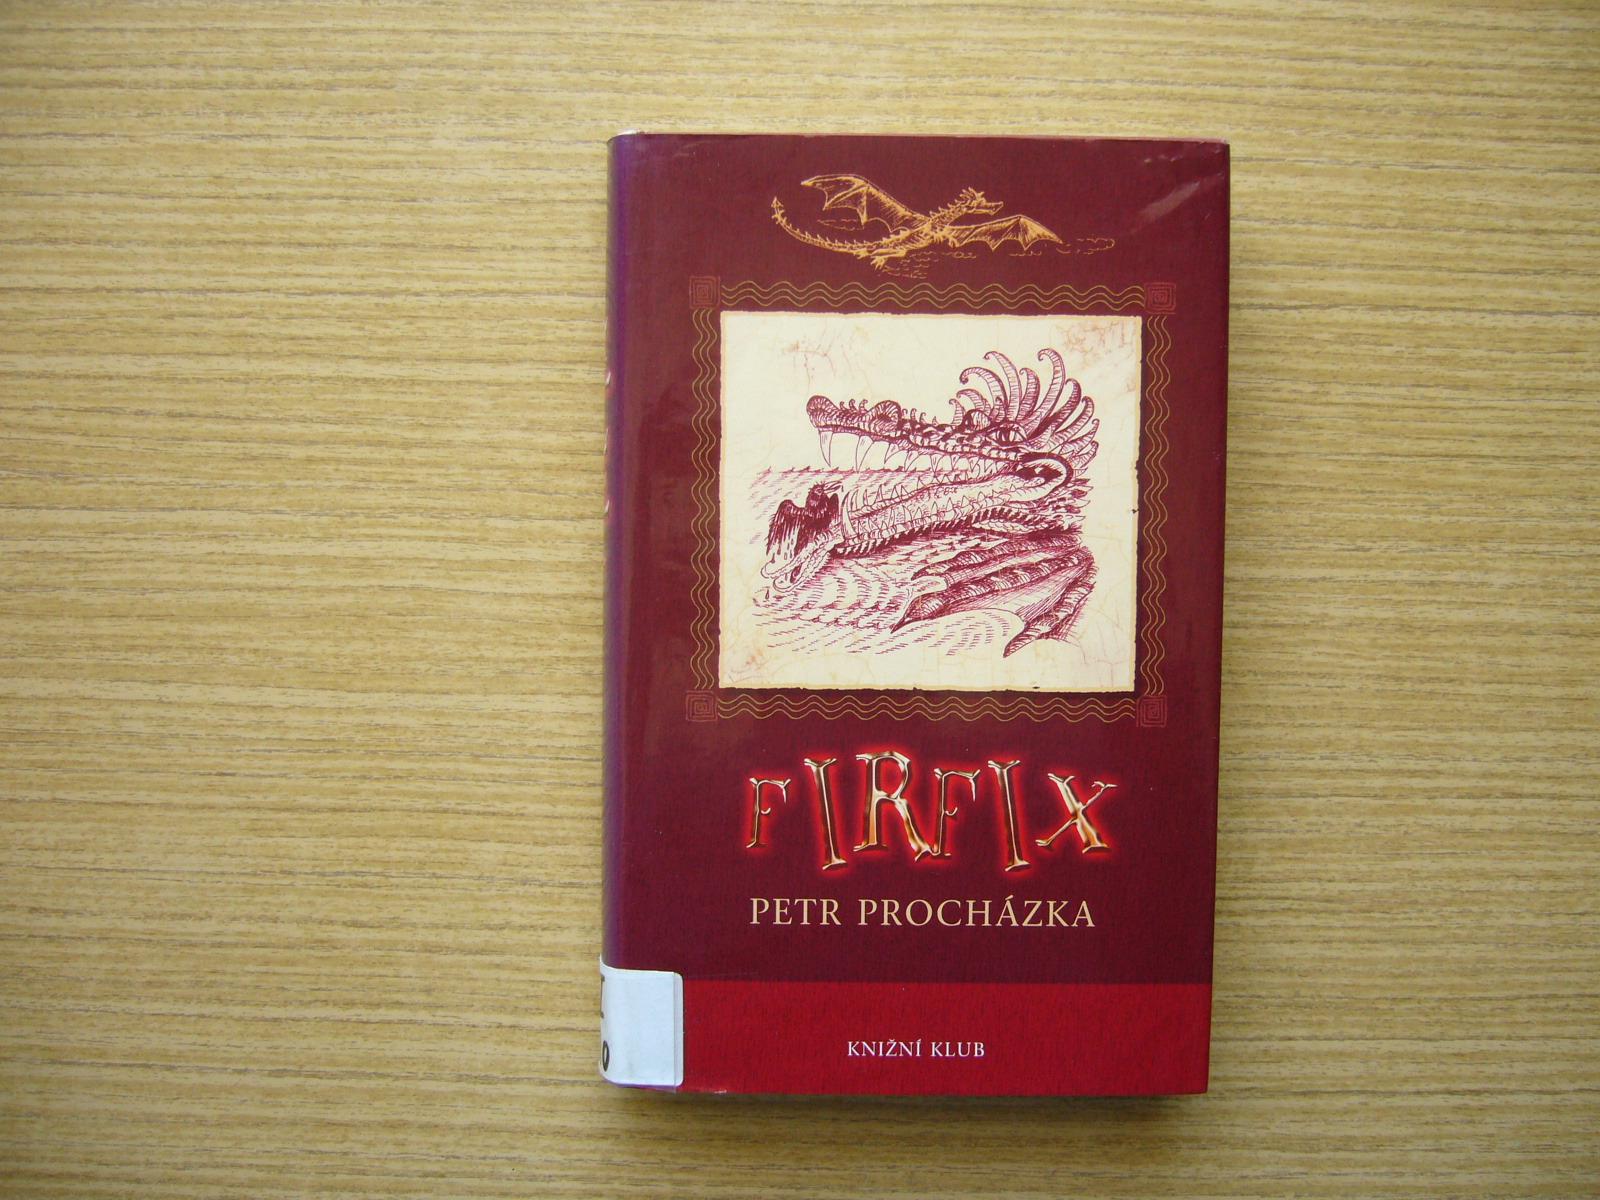 Petr Procházka - Firfix | 2008 -vn - Knižné sci-fi / fantasy